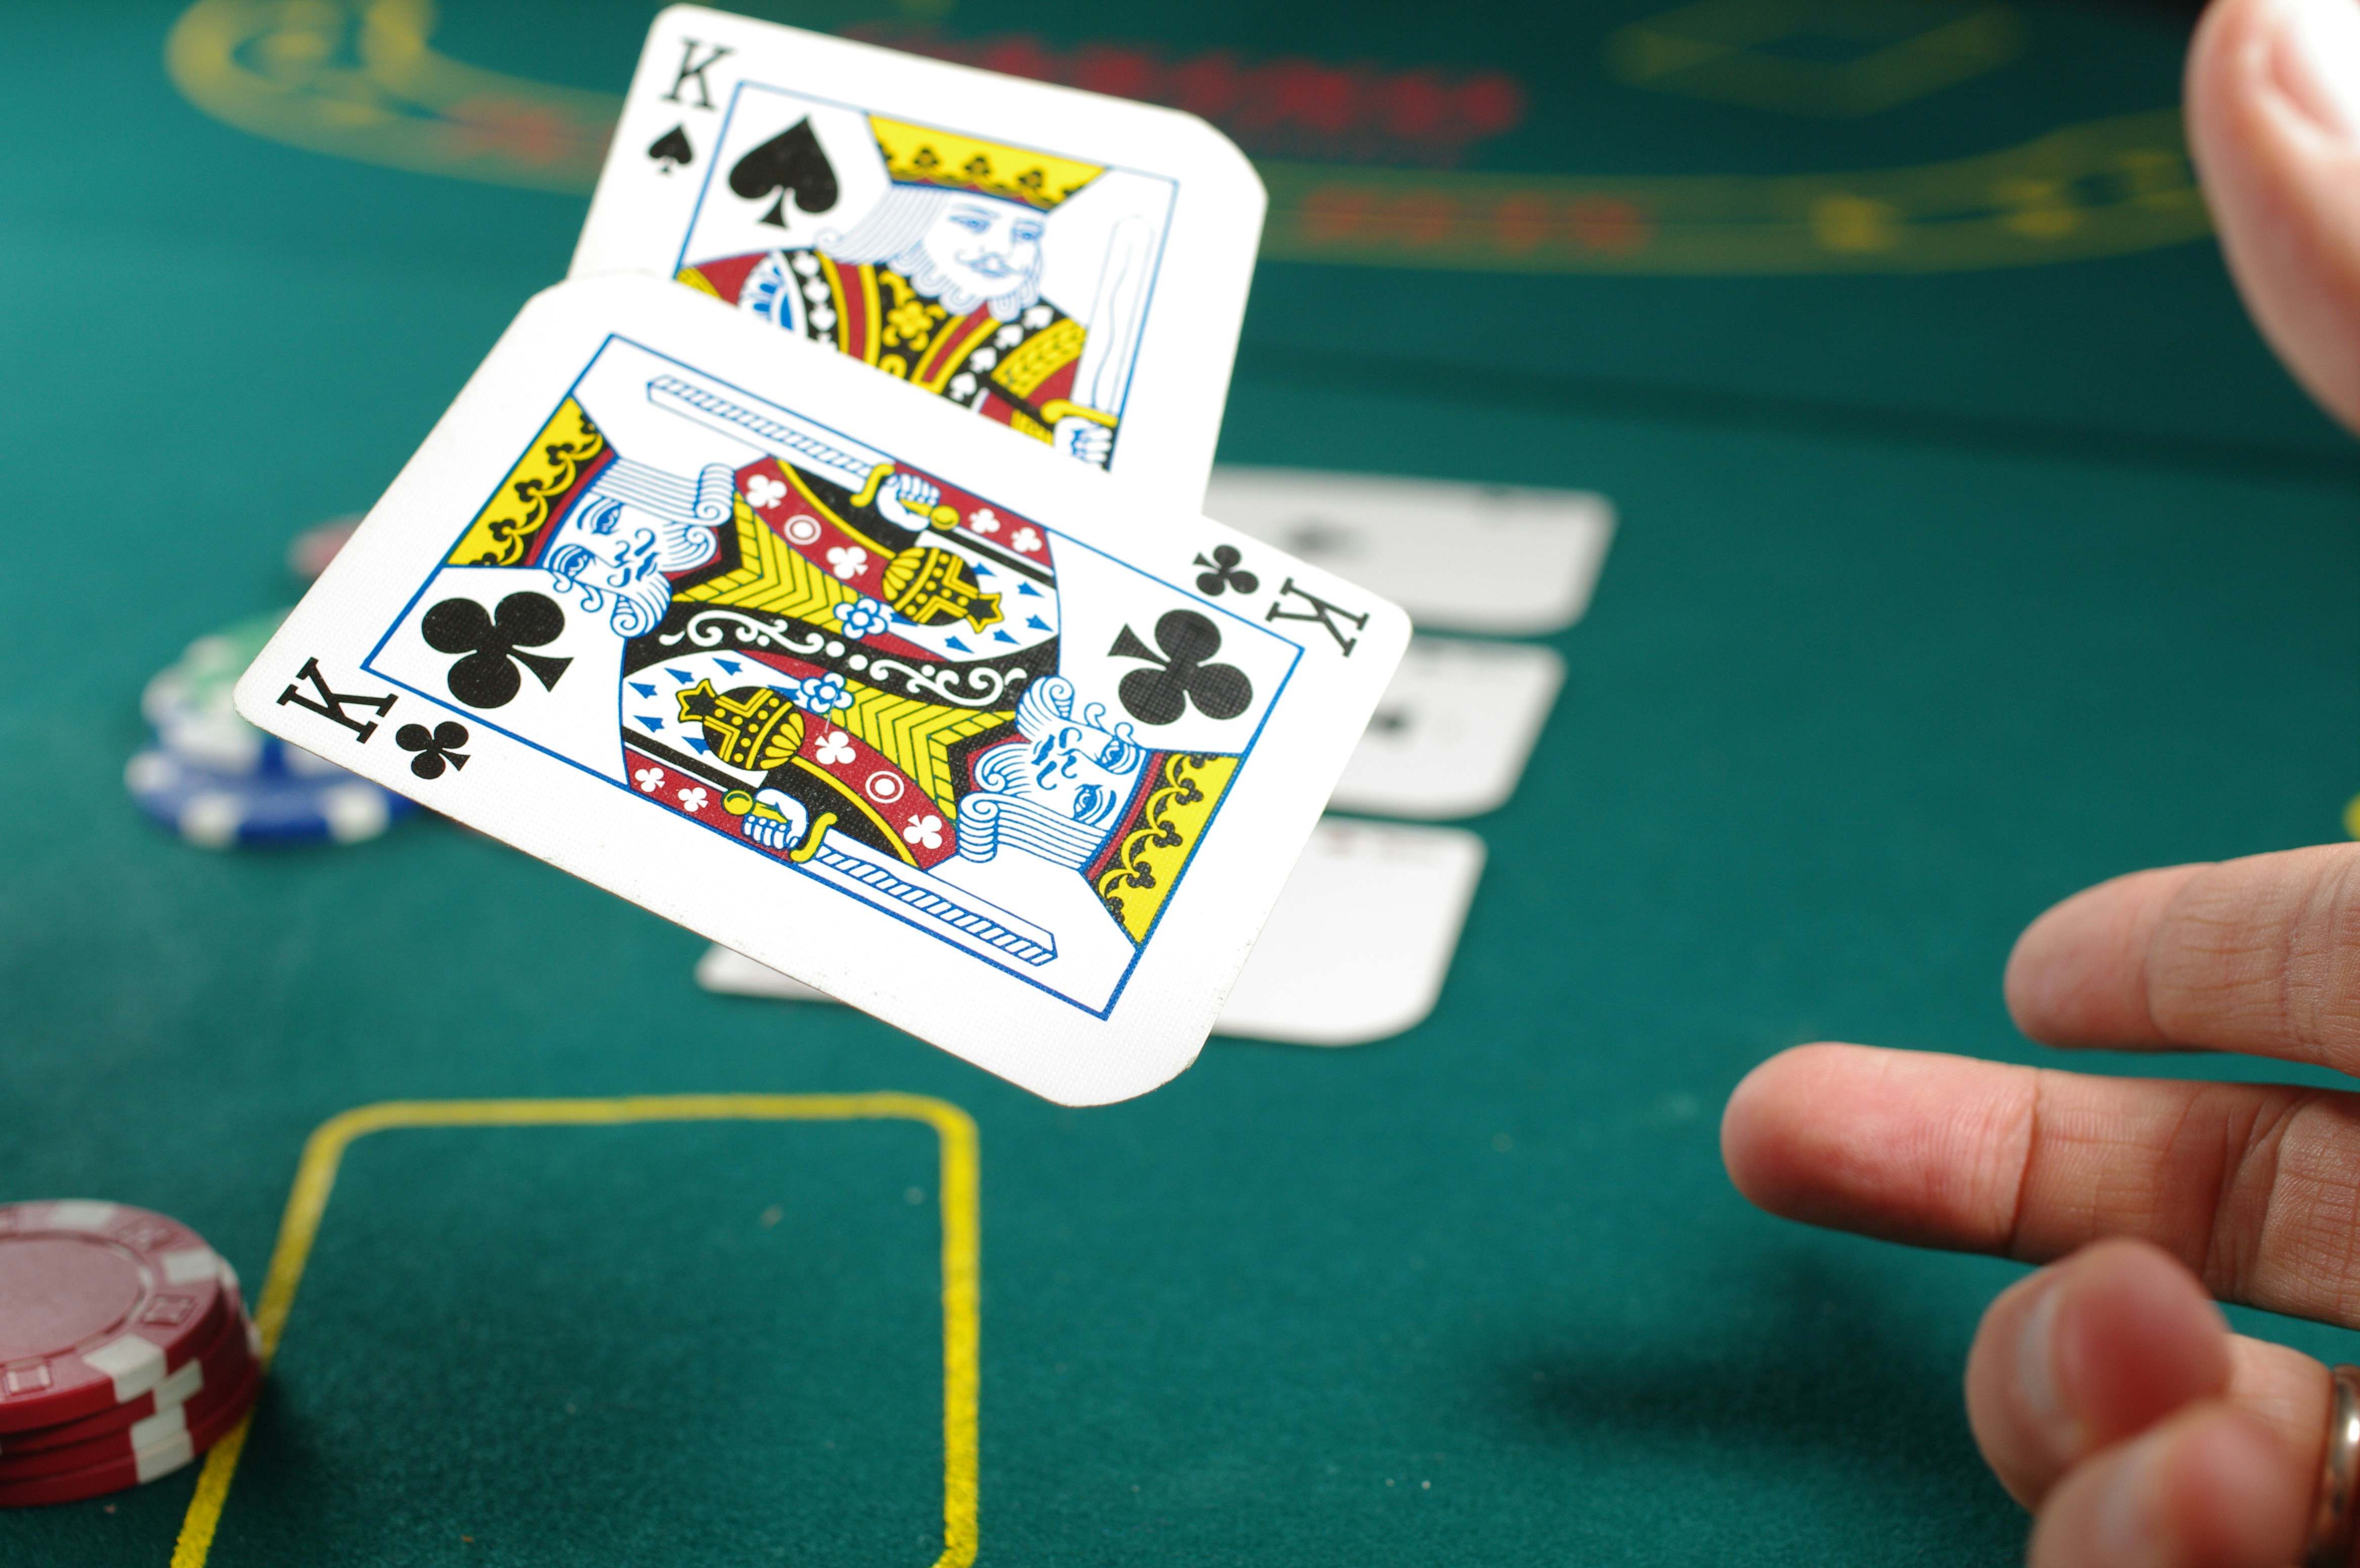 Igre na srečo: Od kdaj je živa igra v kazinojih prepovedana?